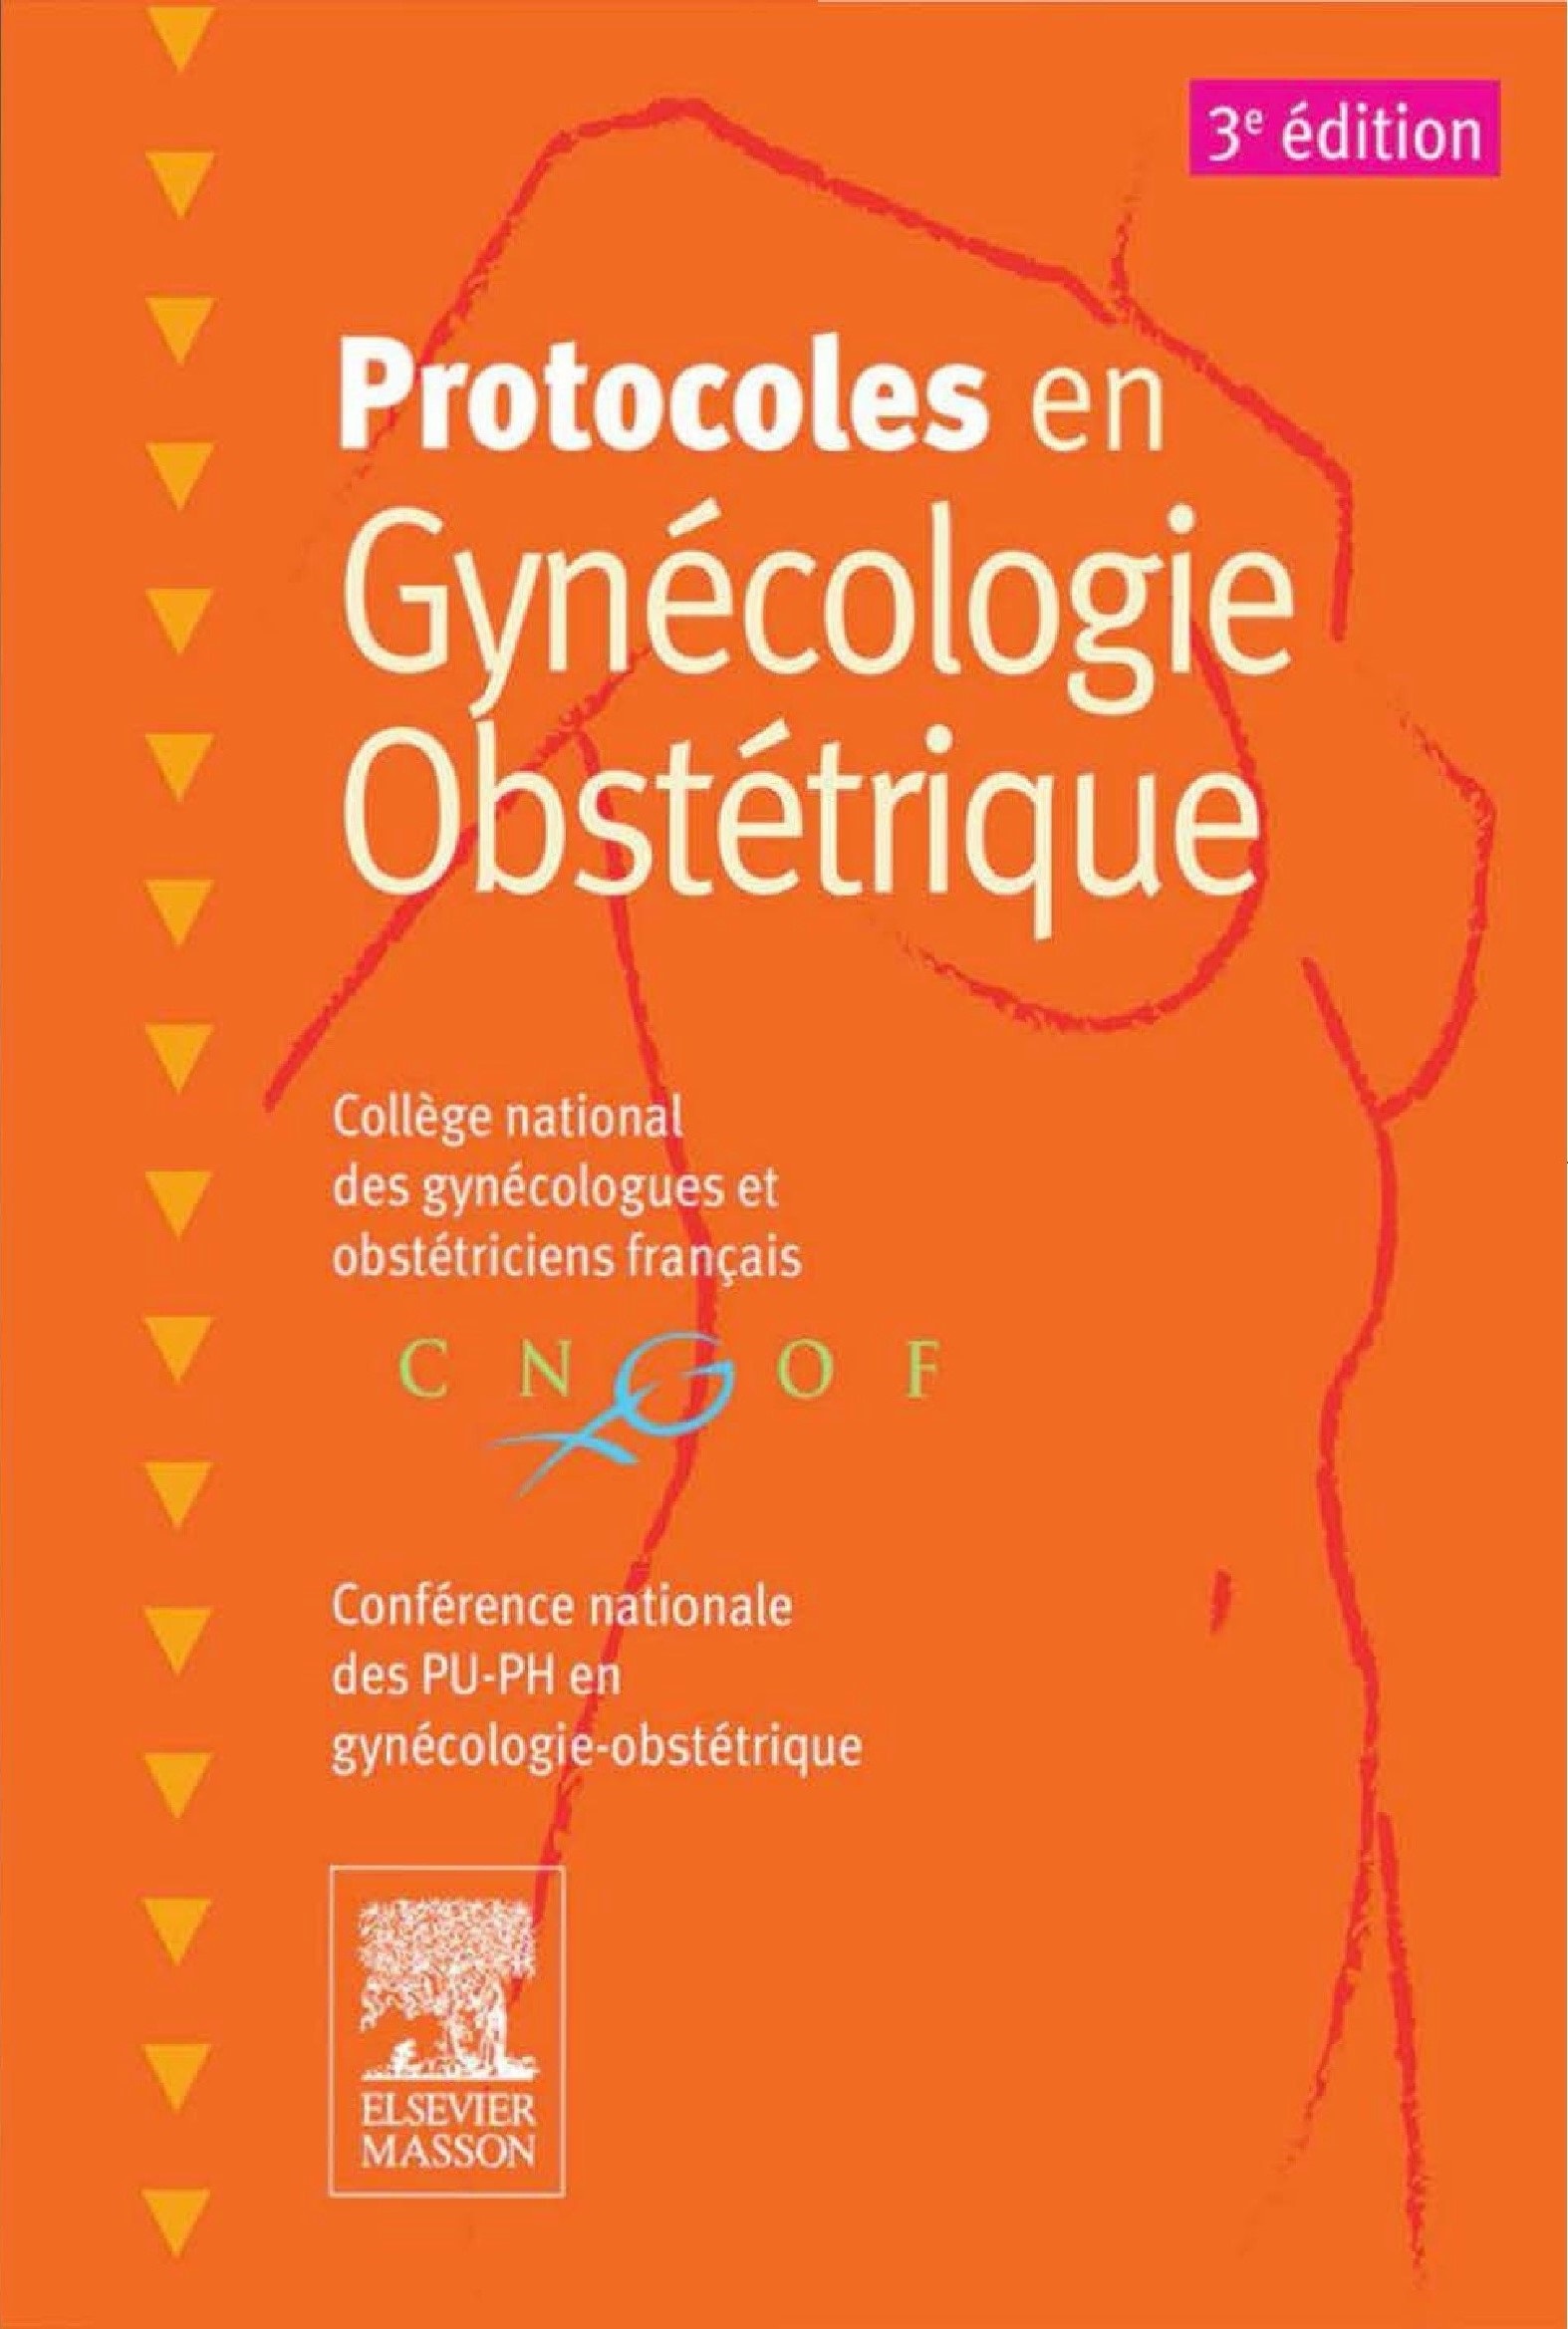 Livres Médicales - Protocoles en Gynécologie Obstétrique 2015 - Page 2 Protoc10